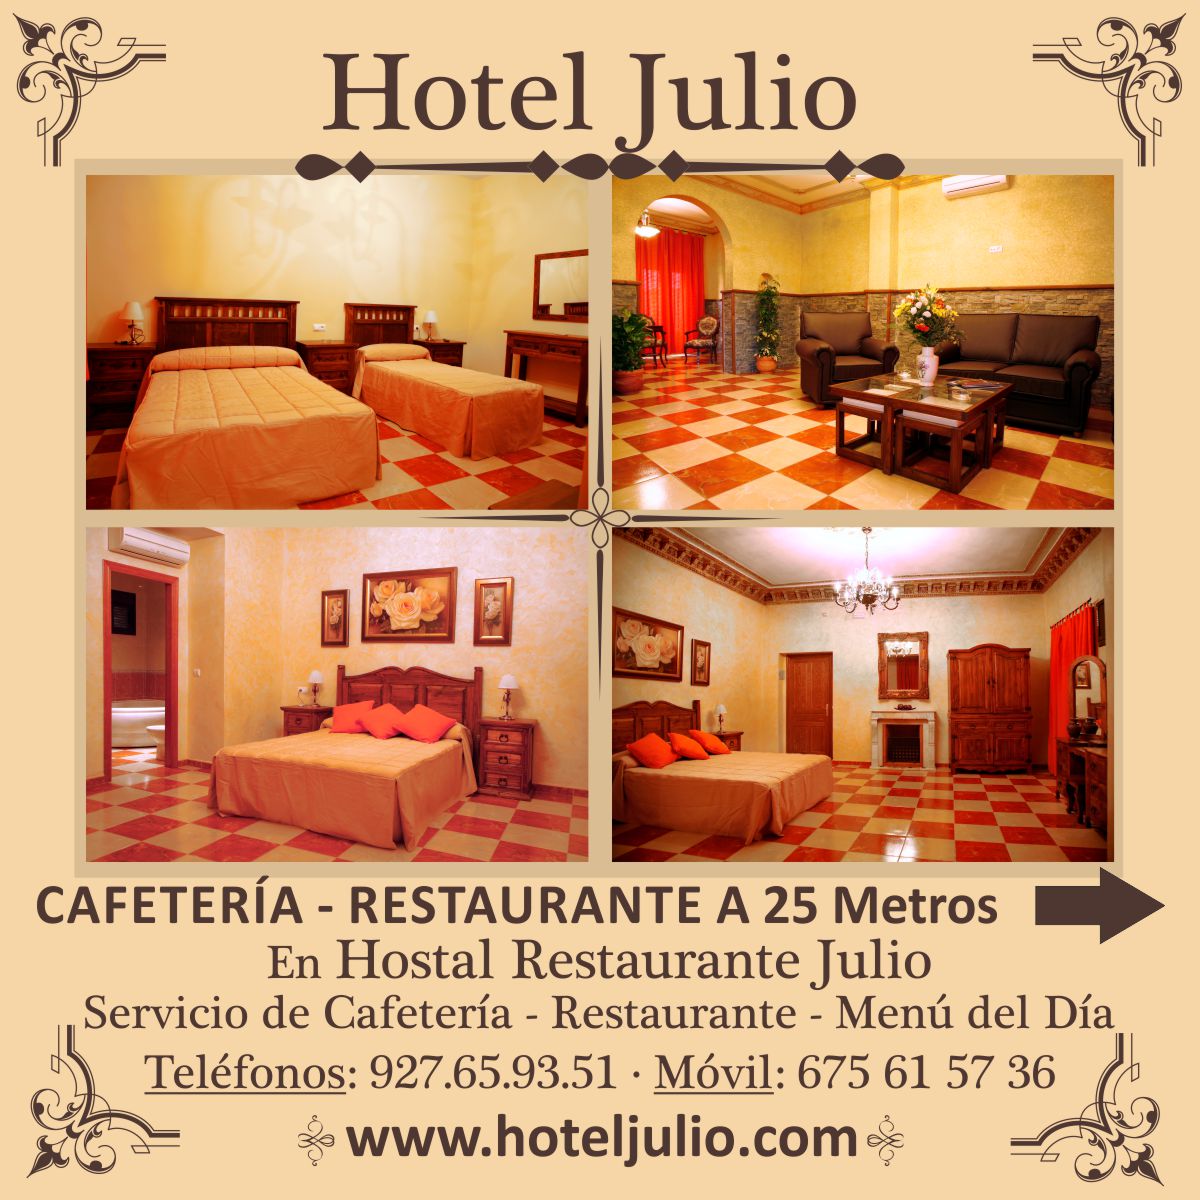 ESPAÑA RESERVA HOTEL EN TRUJILLO JULIO